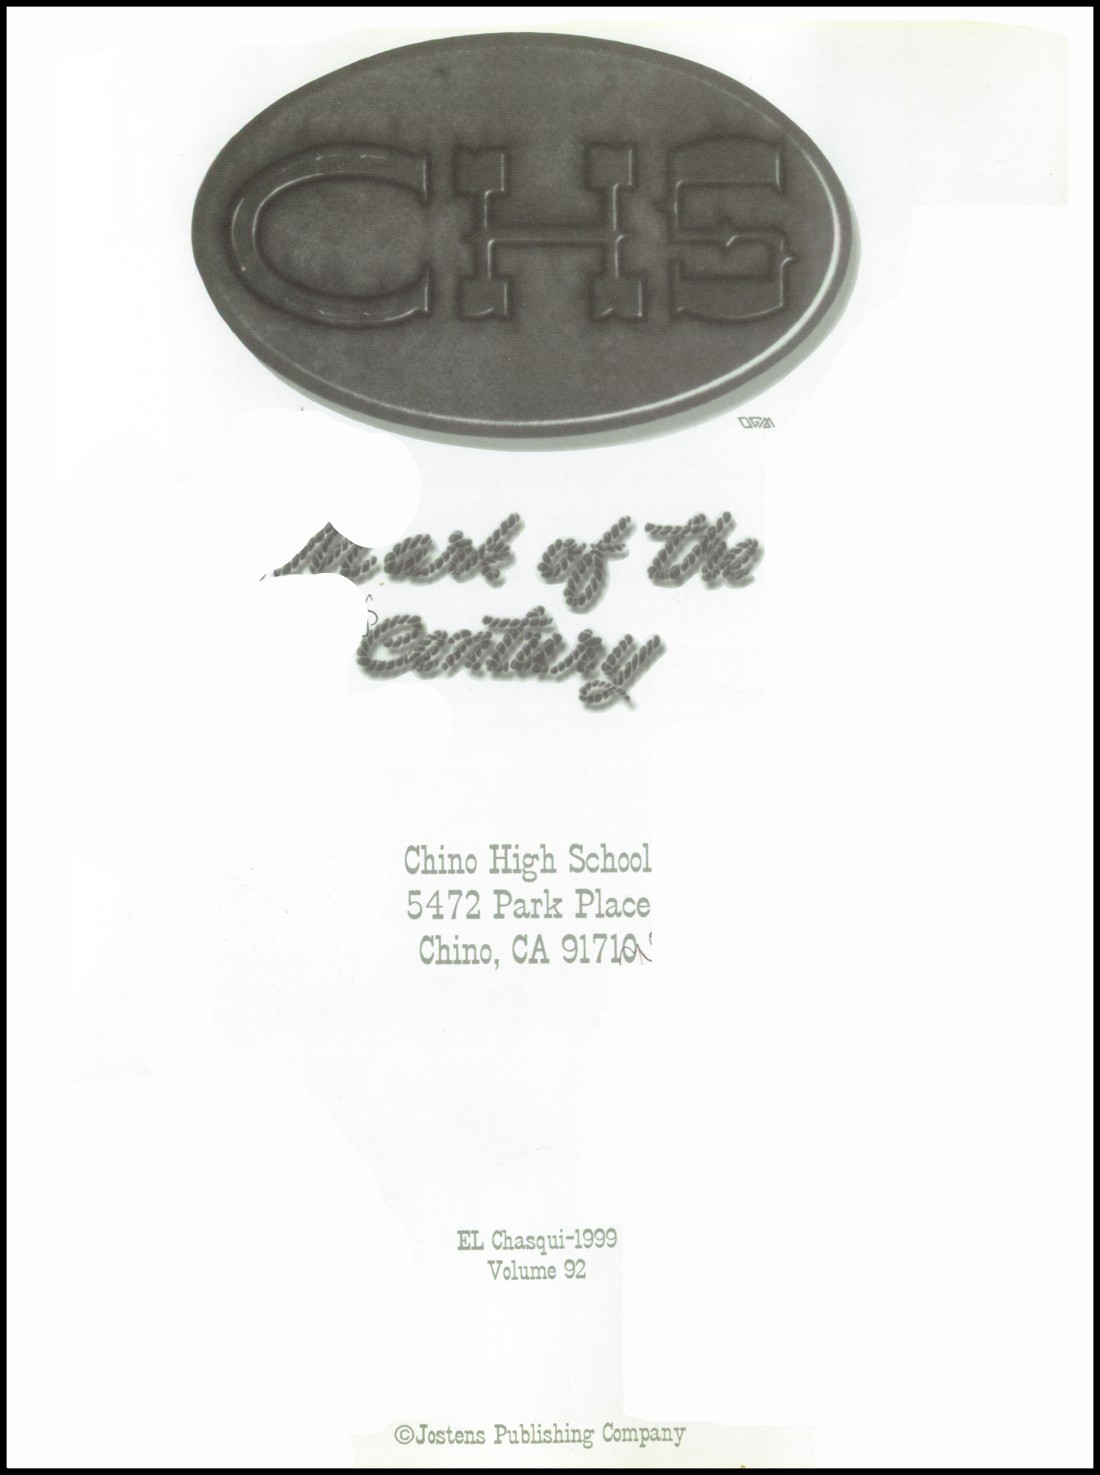 2008 CHINO HIGH SCHOOL YEARBOOK CHINO, CALIFORNIA - EL CHASQUI